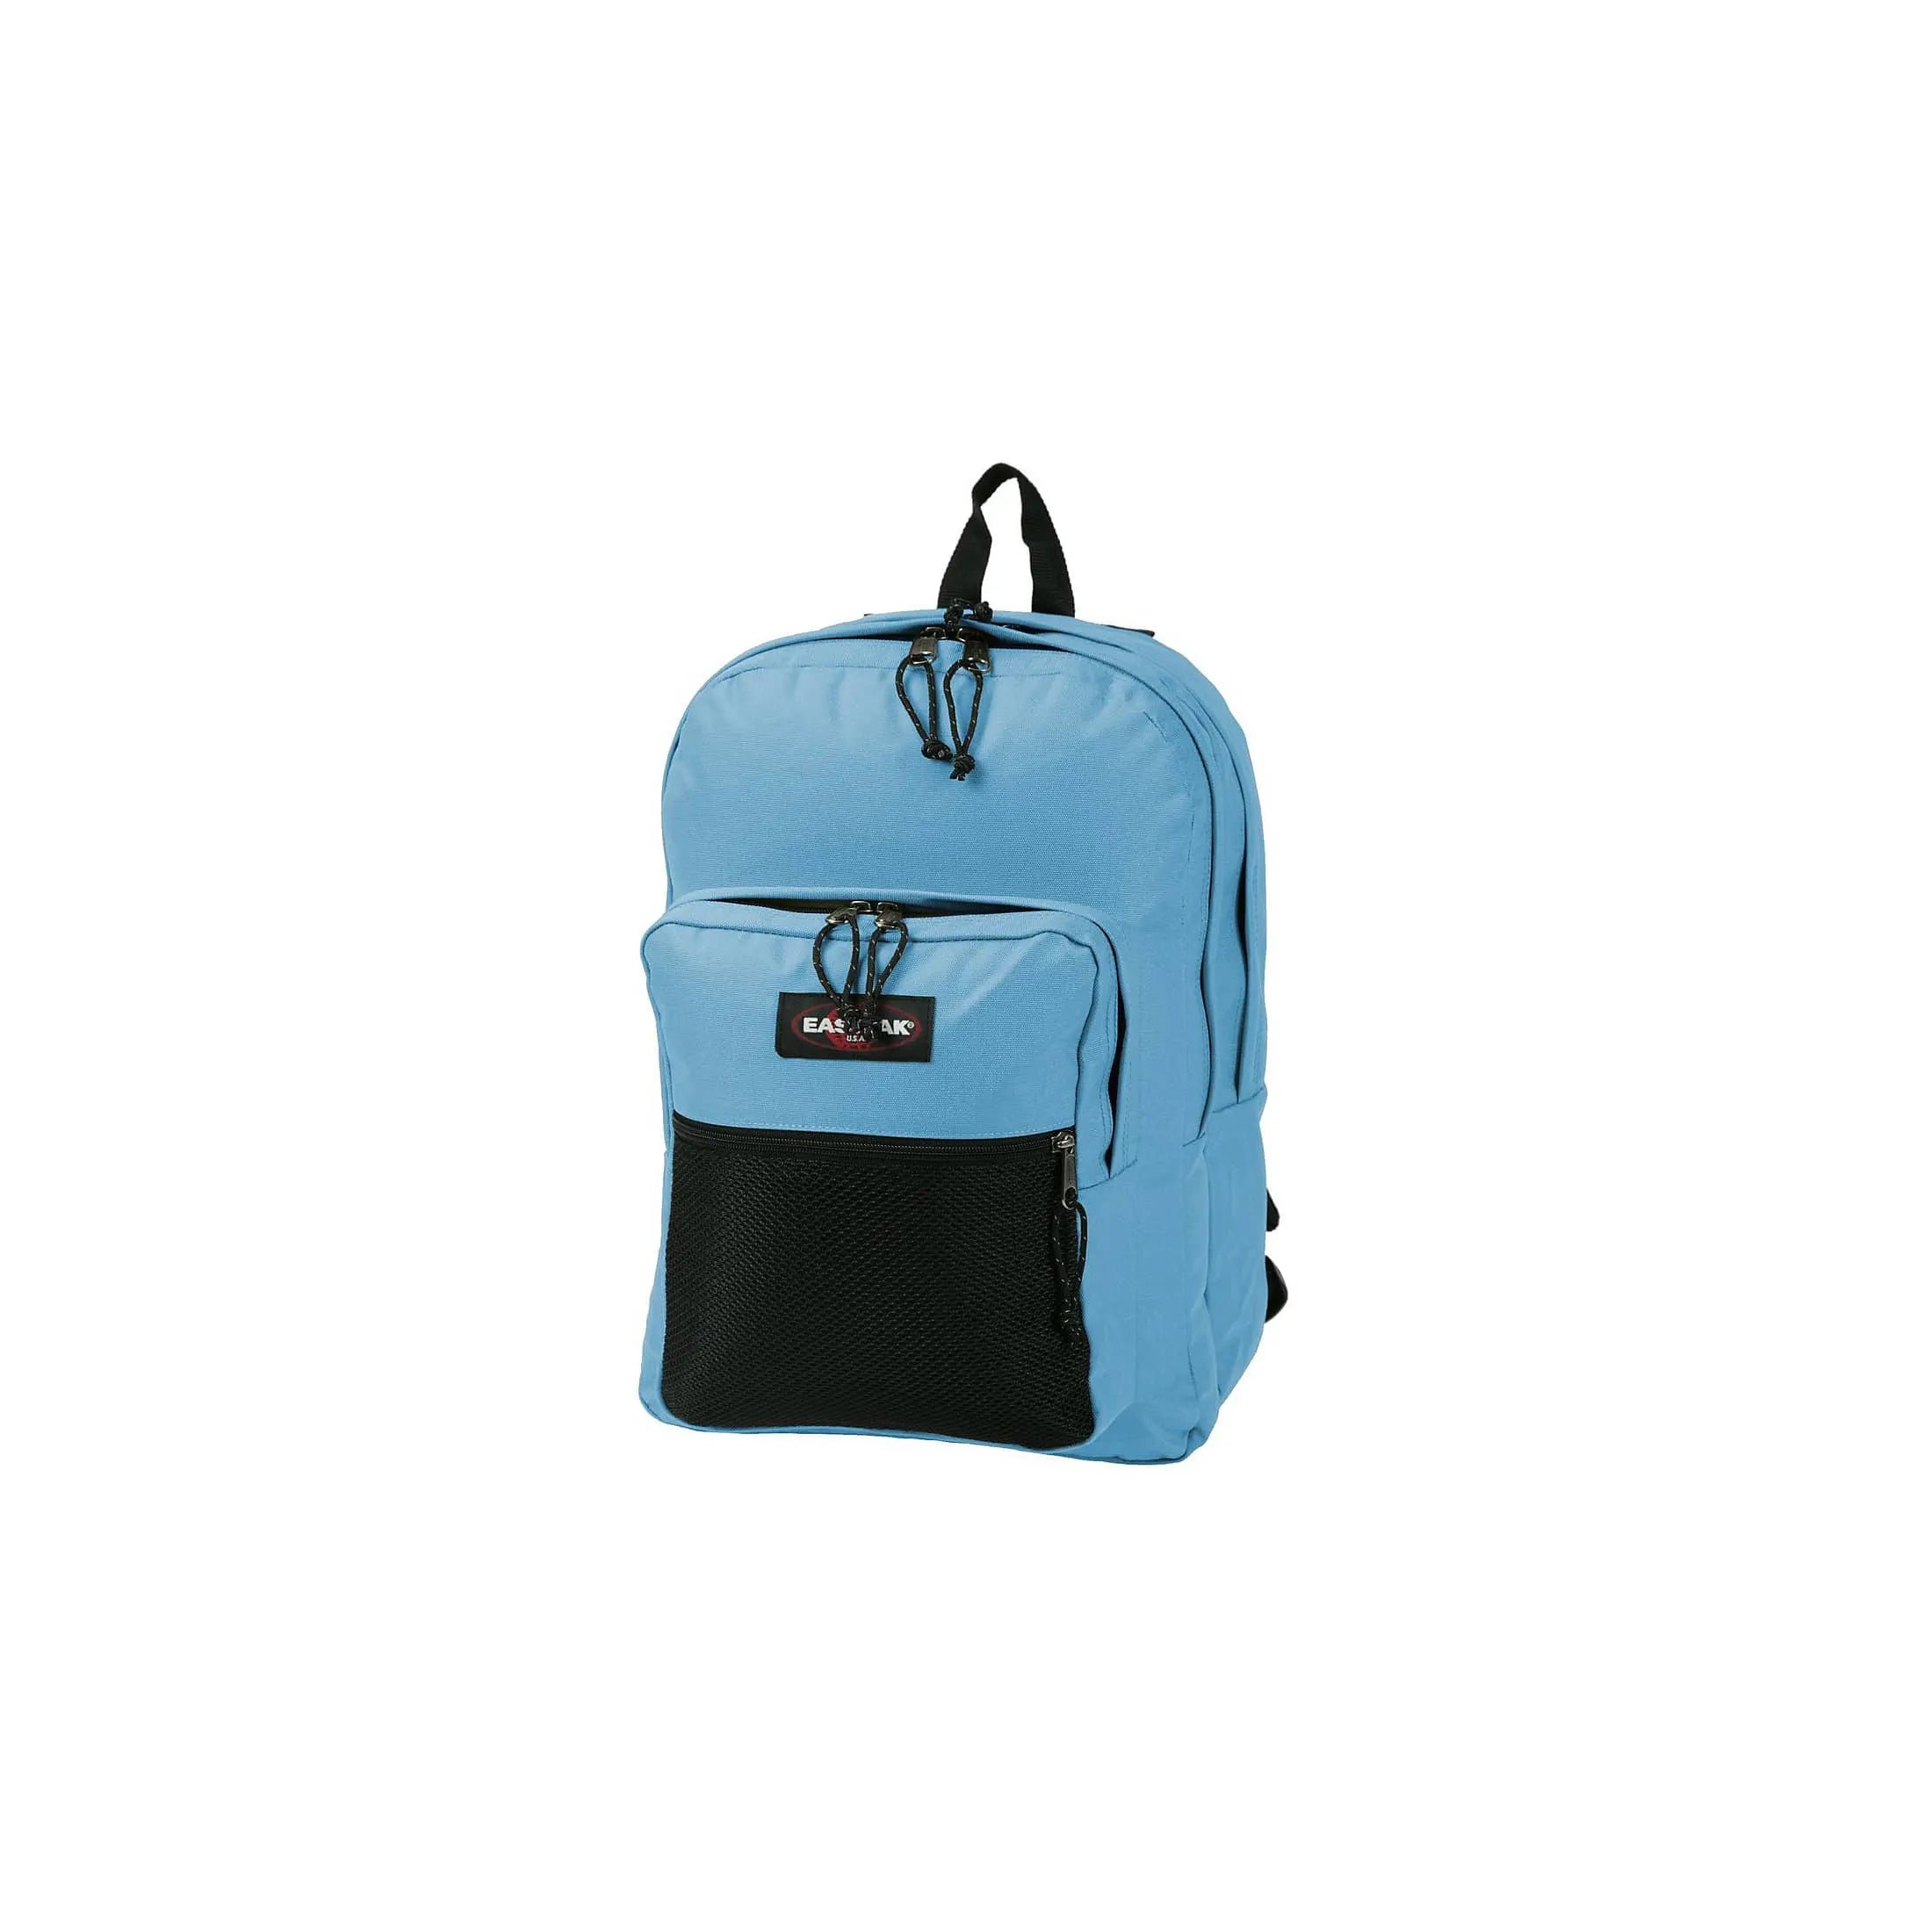 Eastpak Authentic Pinnacle leisure backpack 42 cm - black